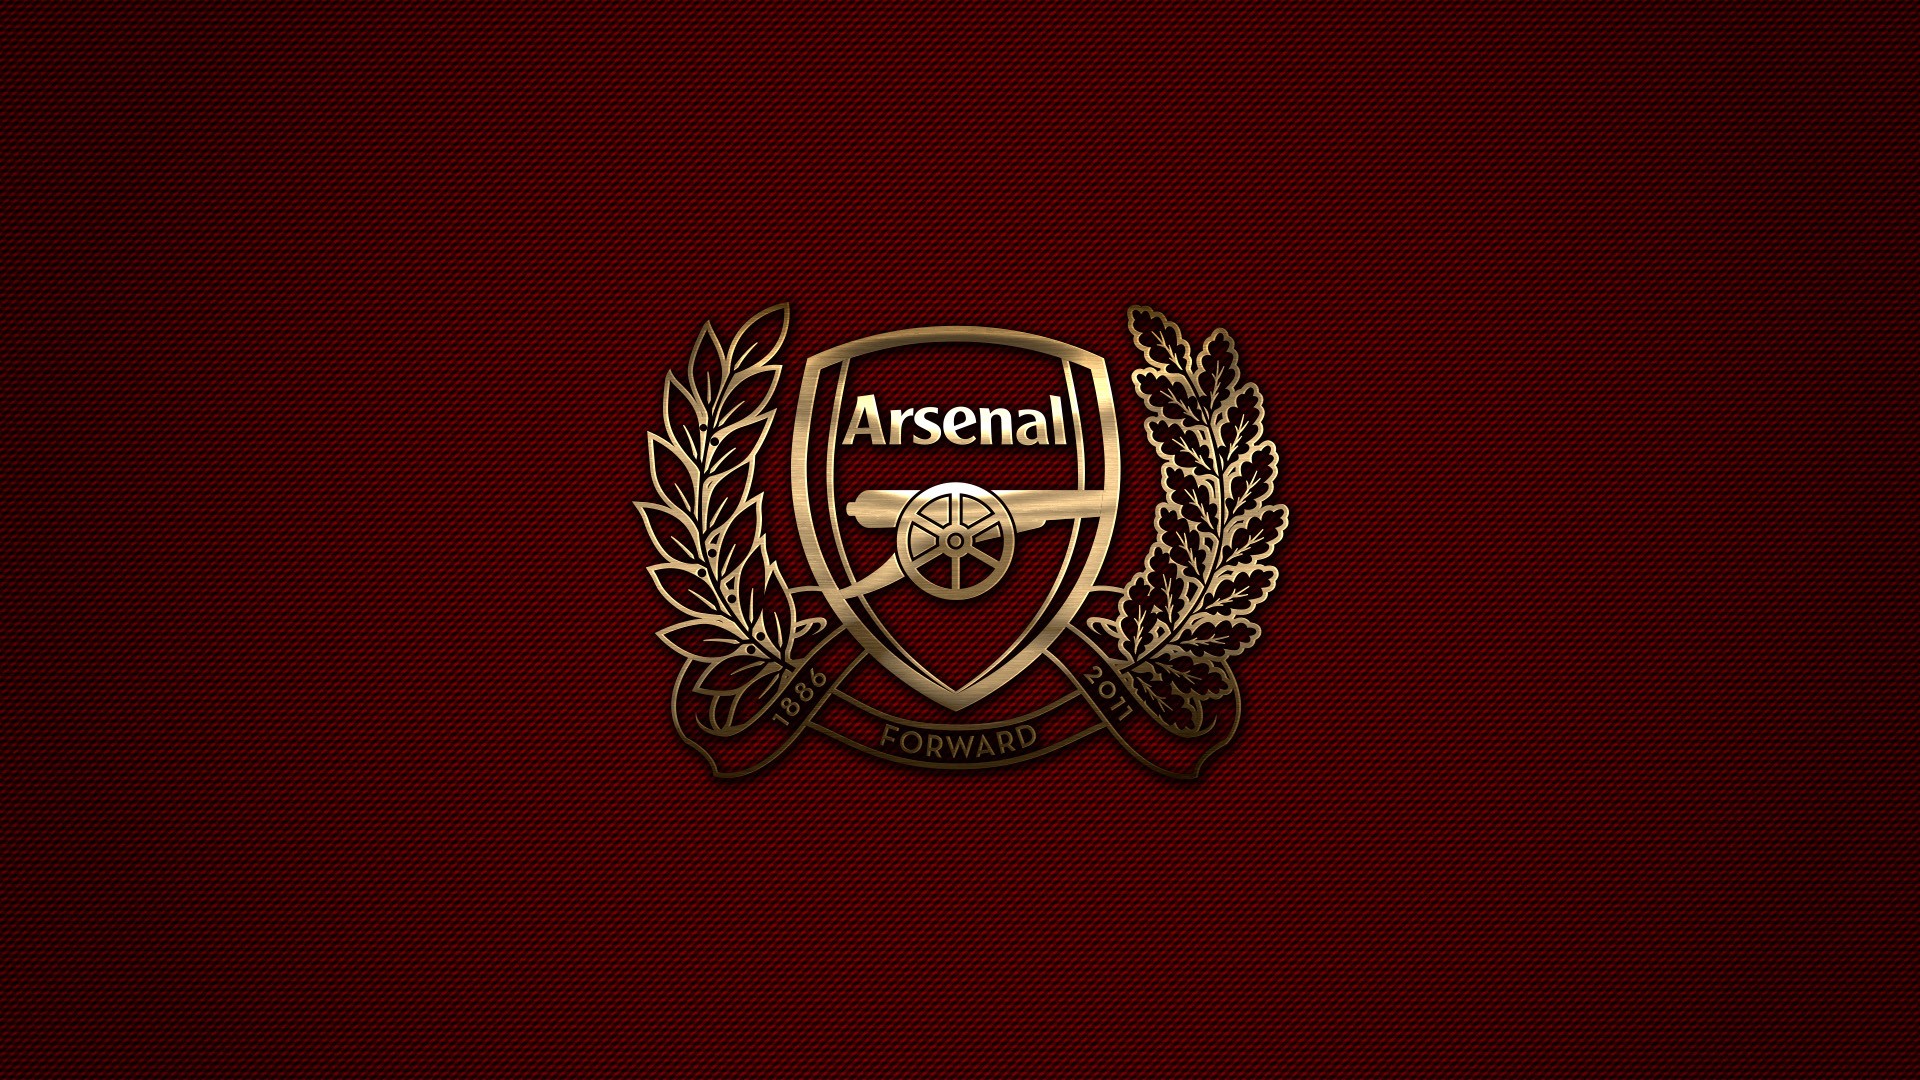 Arsenal London, Arsenal Fc, Premier League, Sports Club Wallpaper